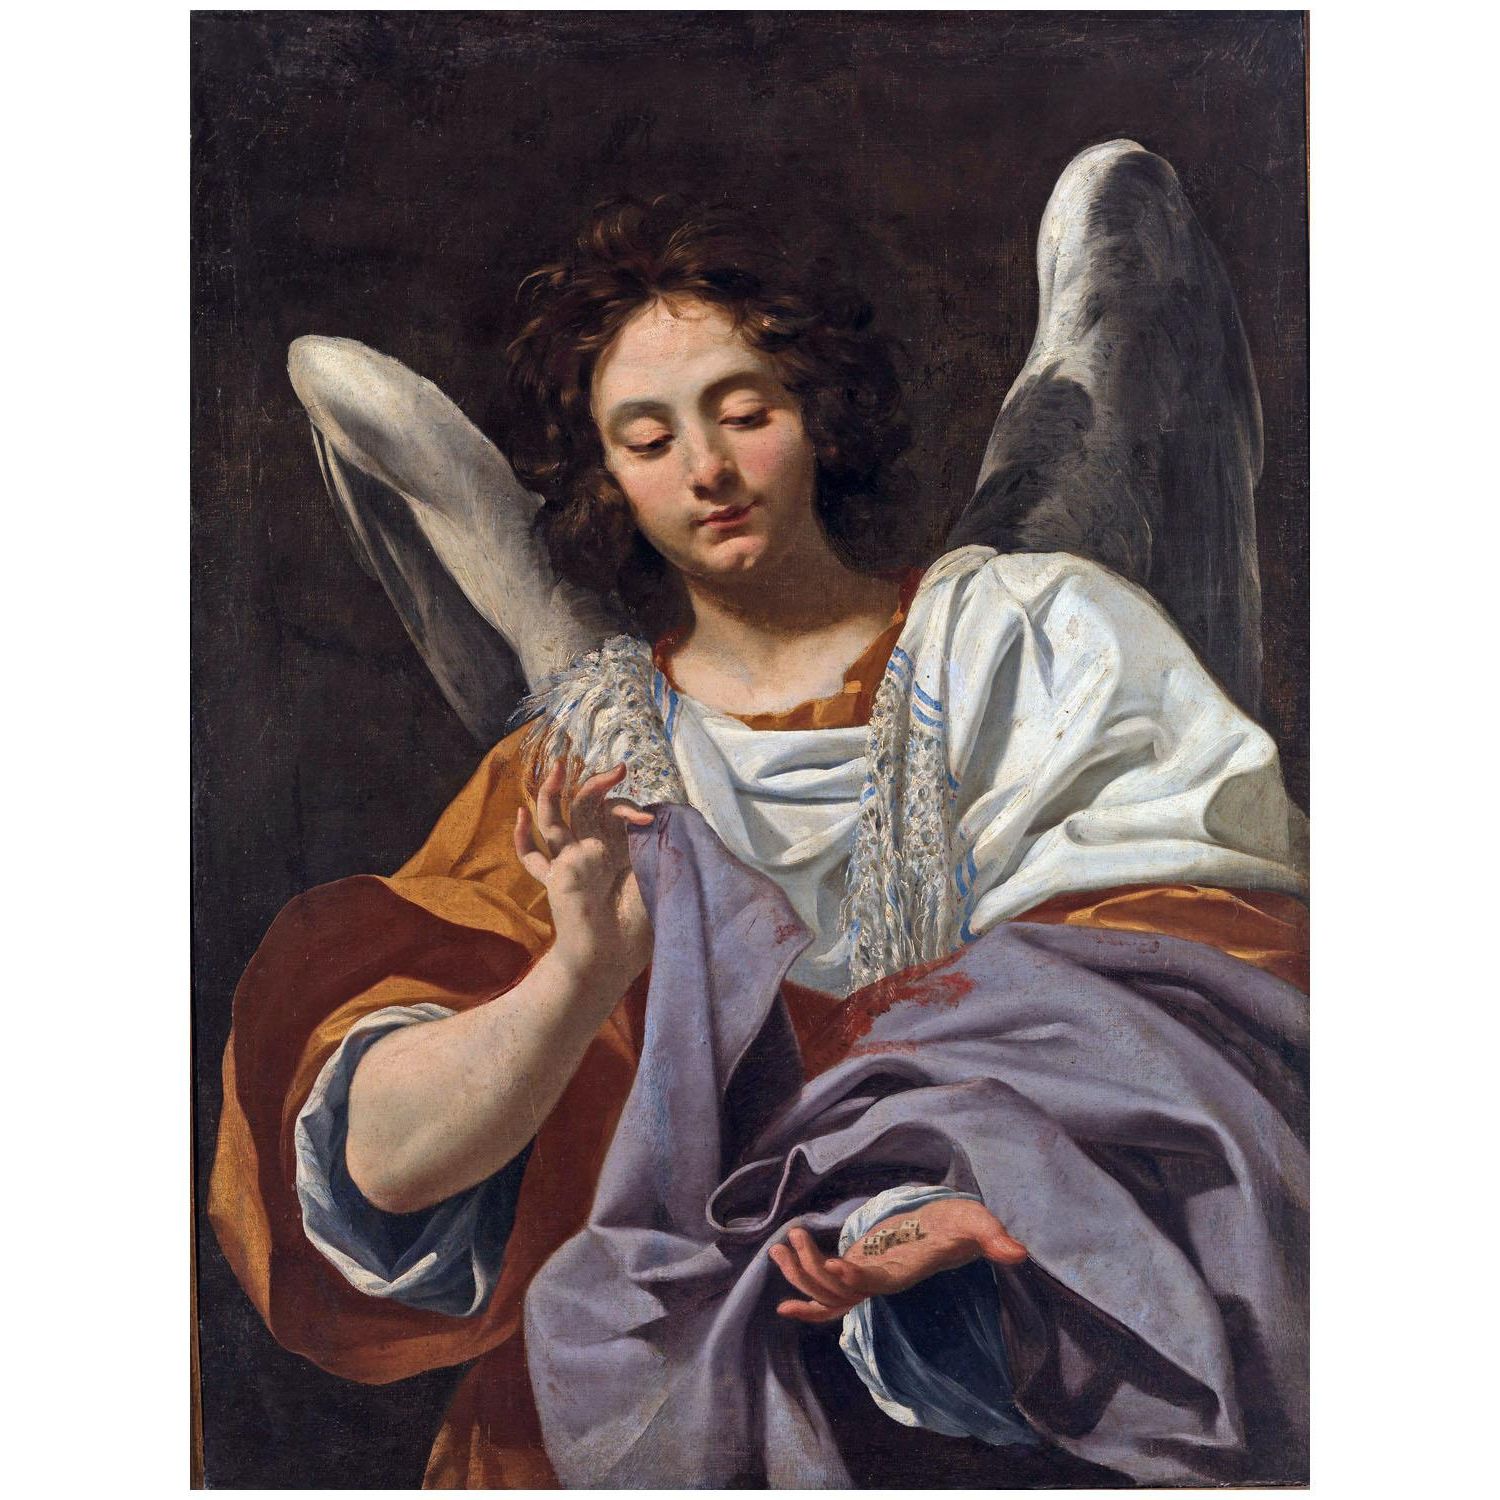 Simon Vouet. Ange avec dés et tunique. 1615-1620. Museo di Capodimonte Naples